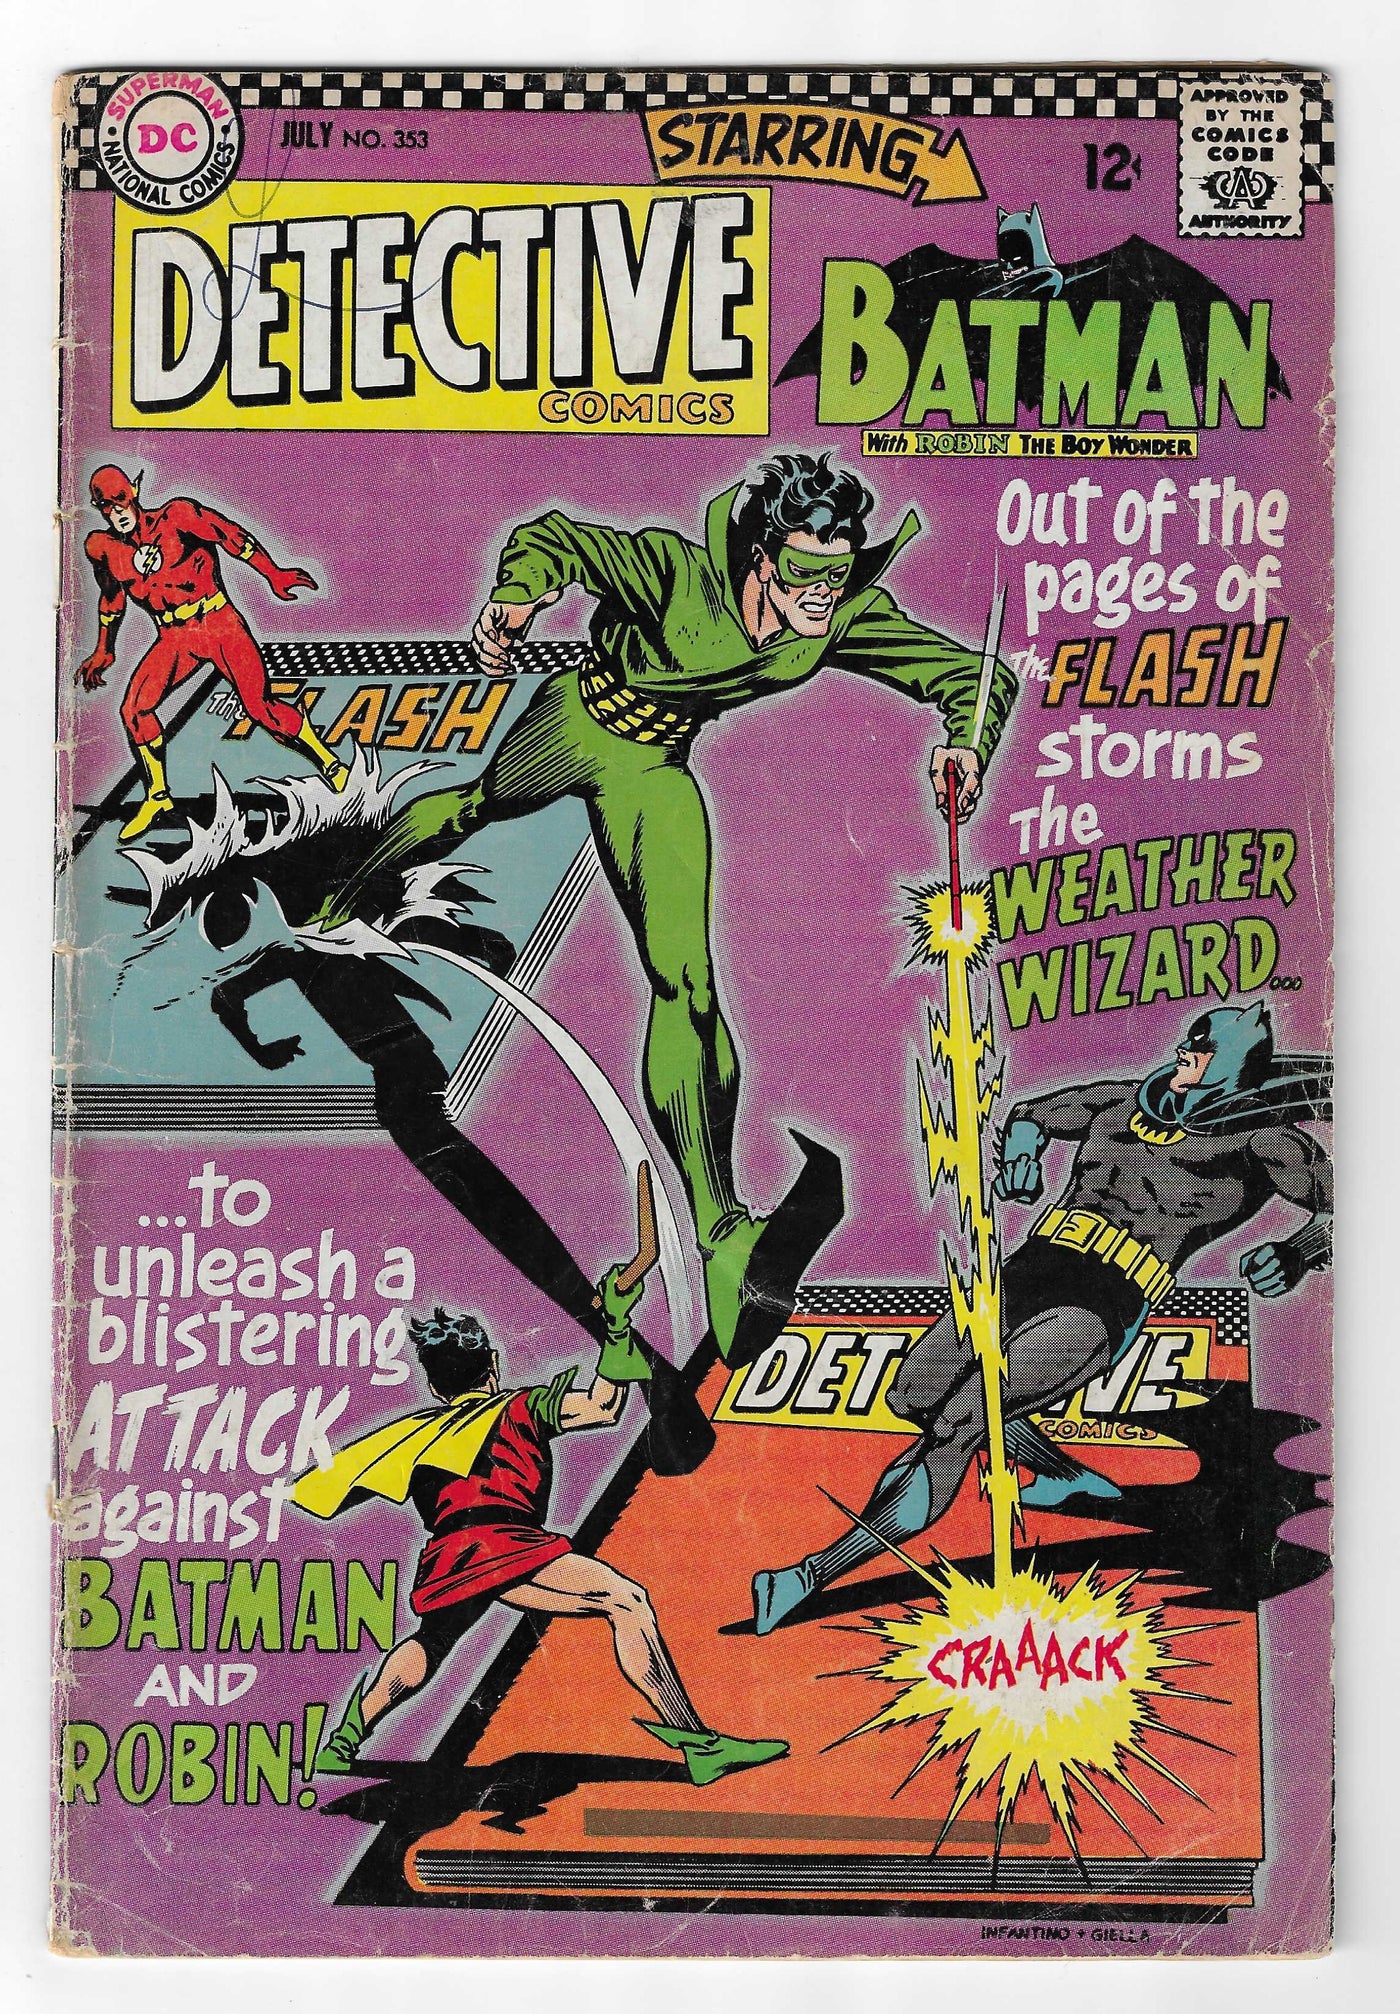 Detective Comics (Volume 1) #353